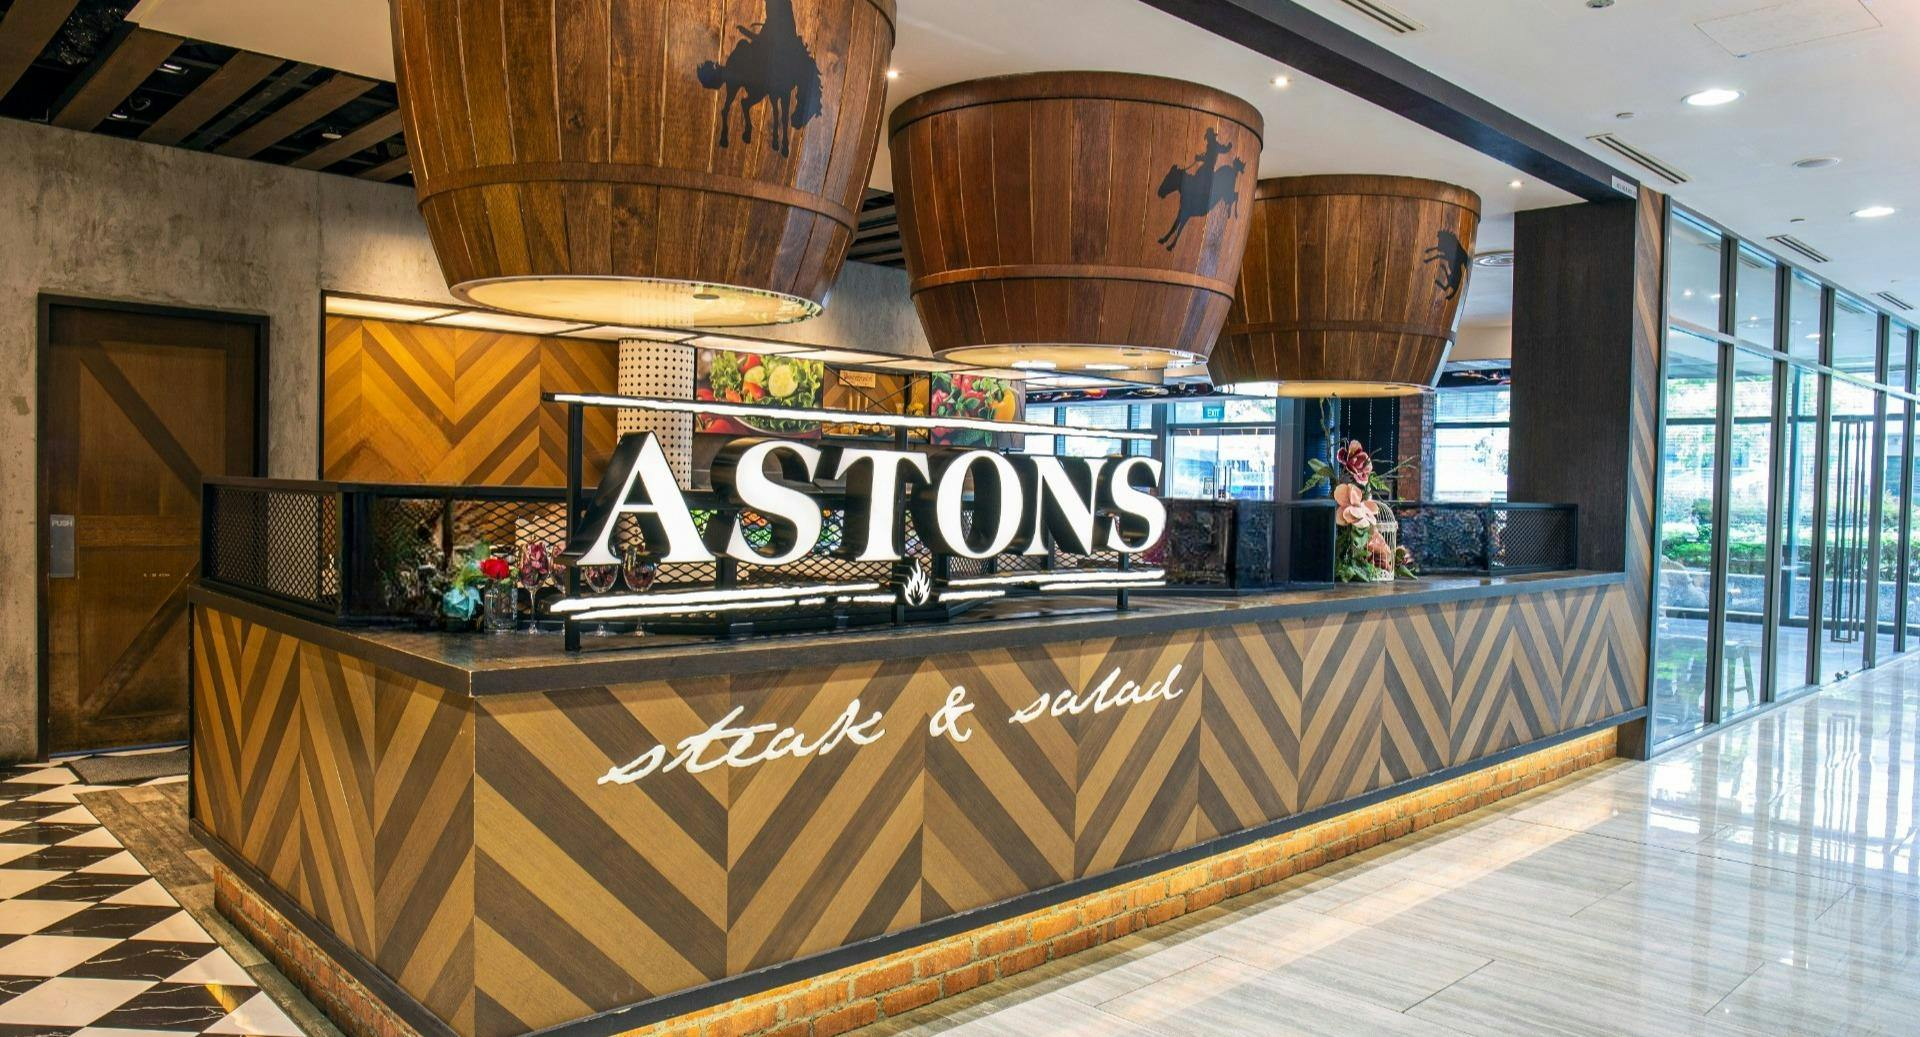 Photo of restaurant ASTONS Steak & Salad - Marina Square in Esplanade, Singapore